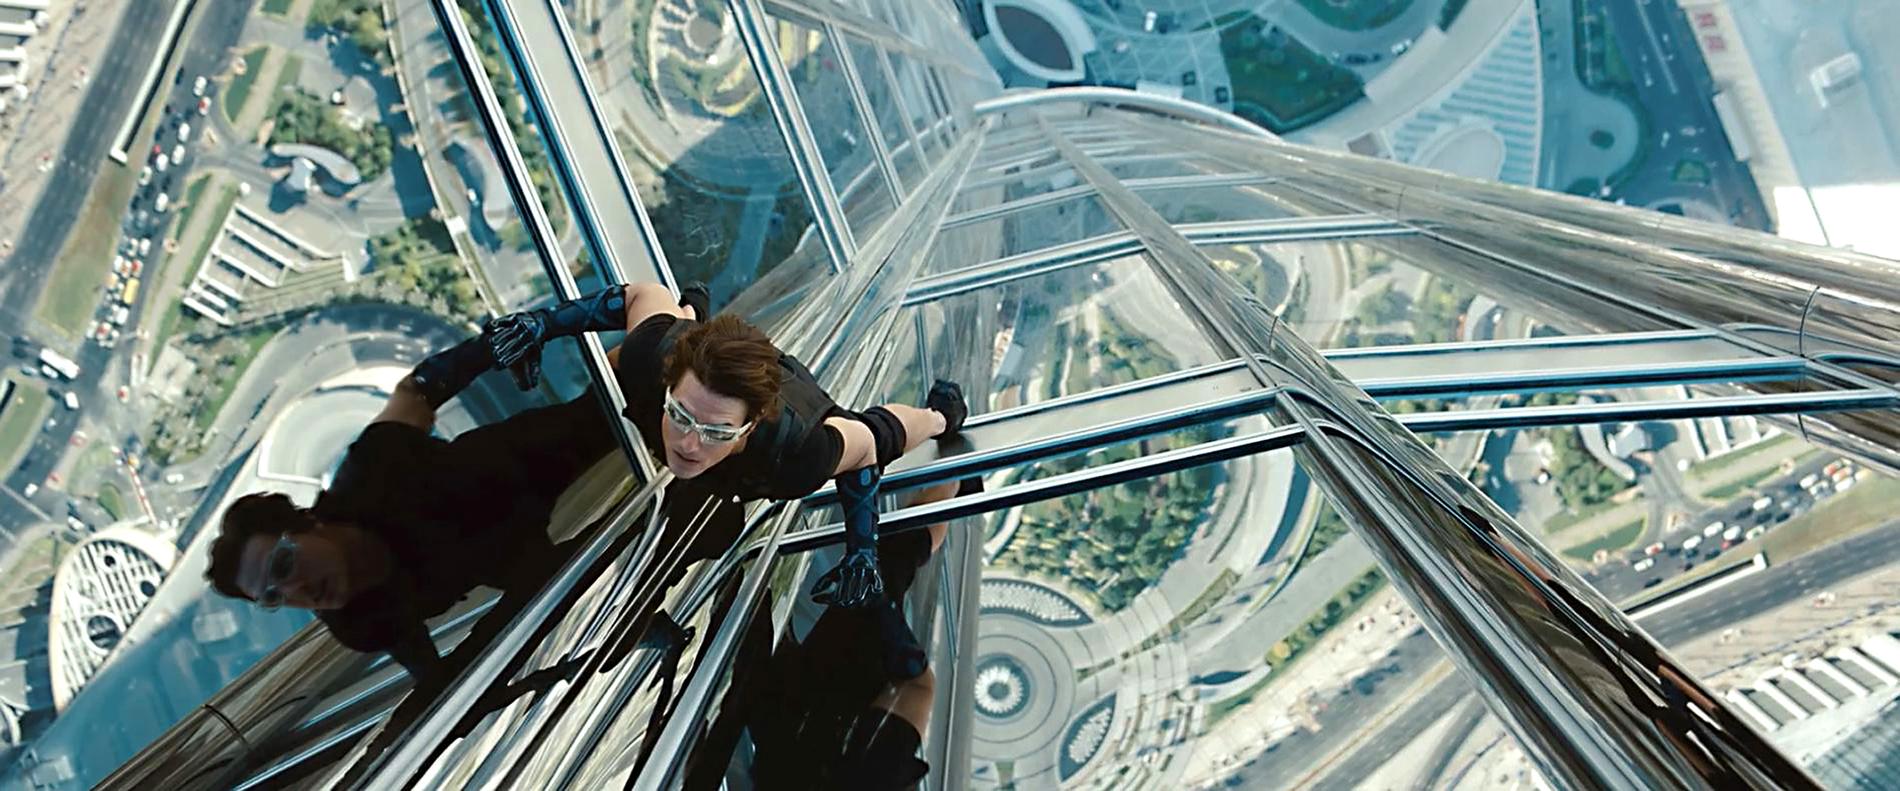 Klättrandet på skyskrapan i Dubai är ett av de mest spektakulära inslagen i fjärde ”Mission: Impossible”-filmen.Foto: UIP